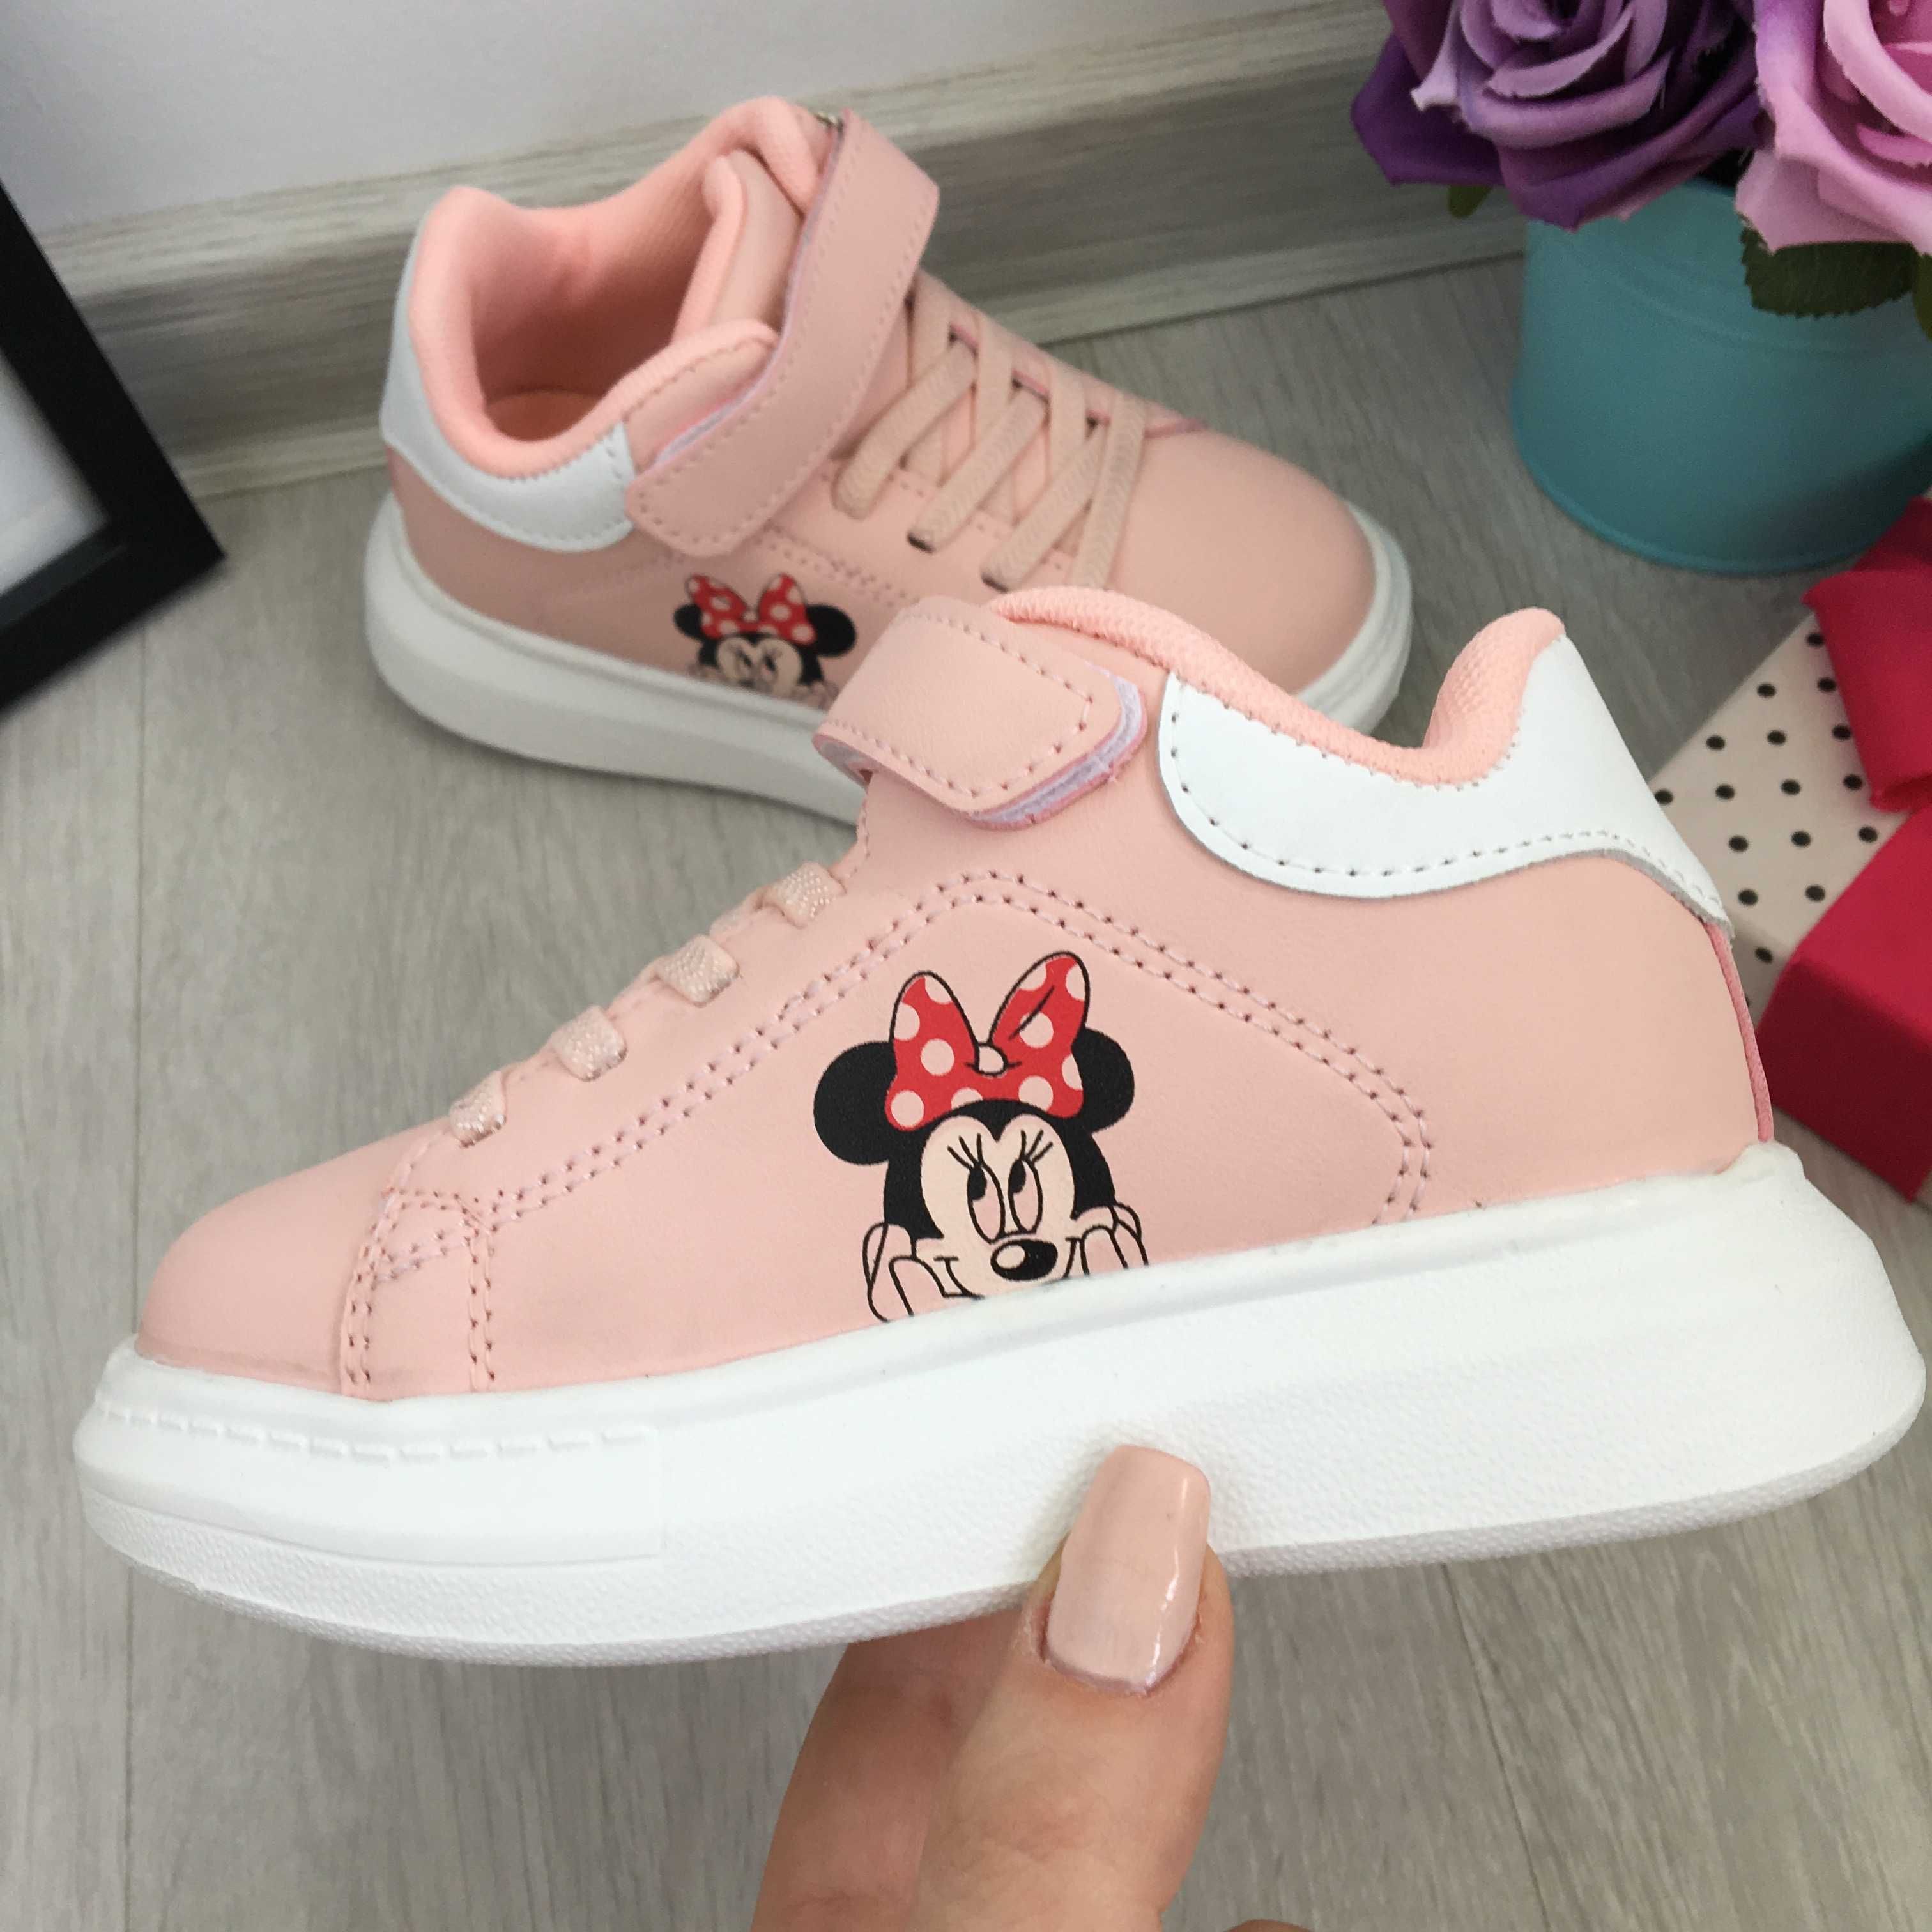 NOU Ghete roz cu Minnie Mouse Disney adidasi usori fete 26 27 28